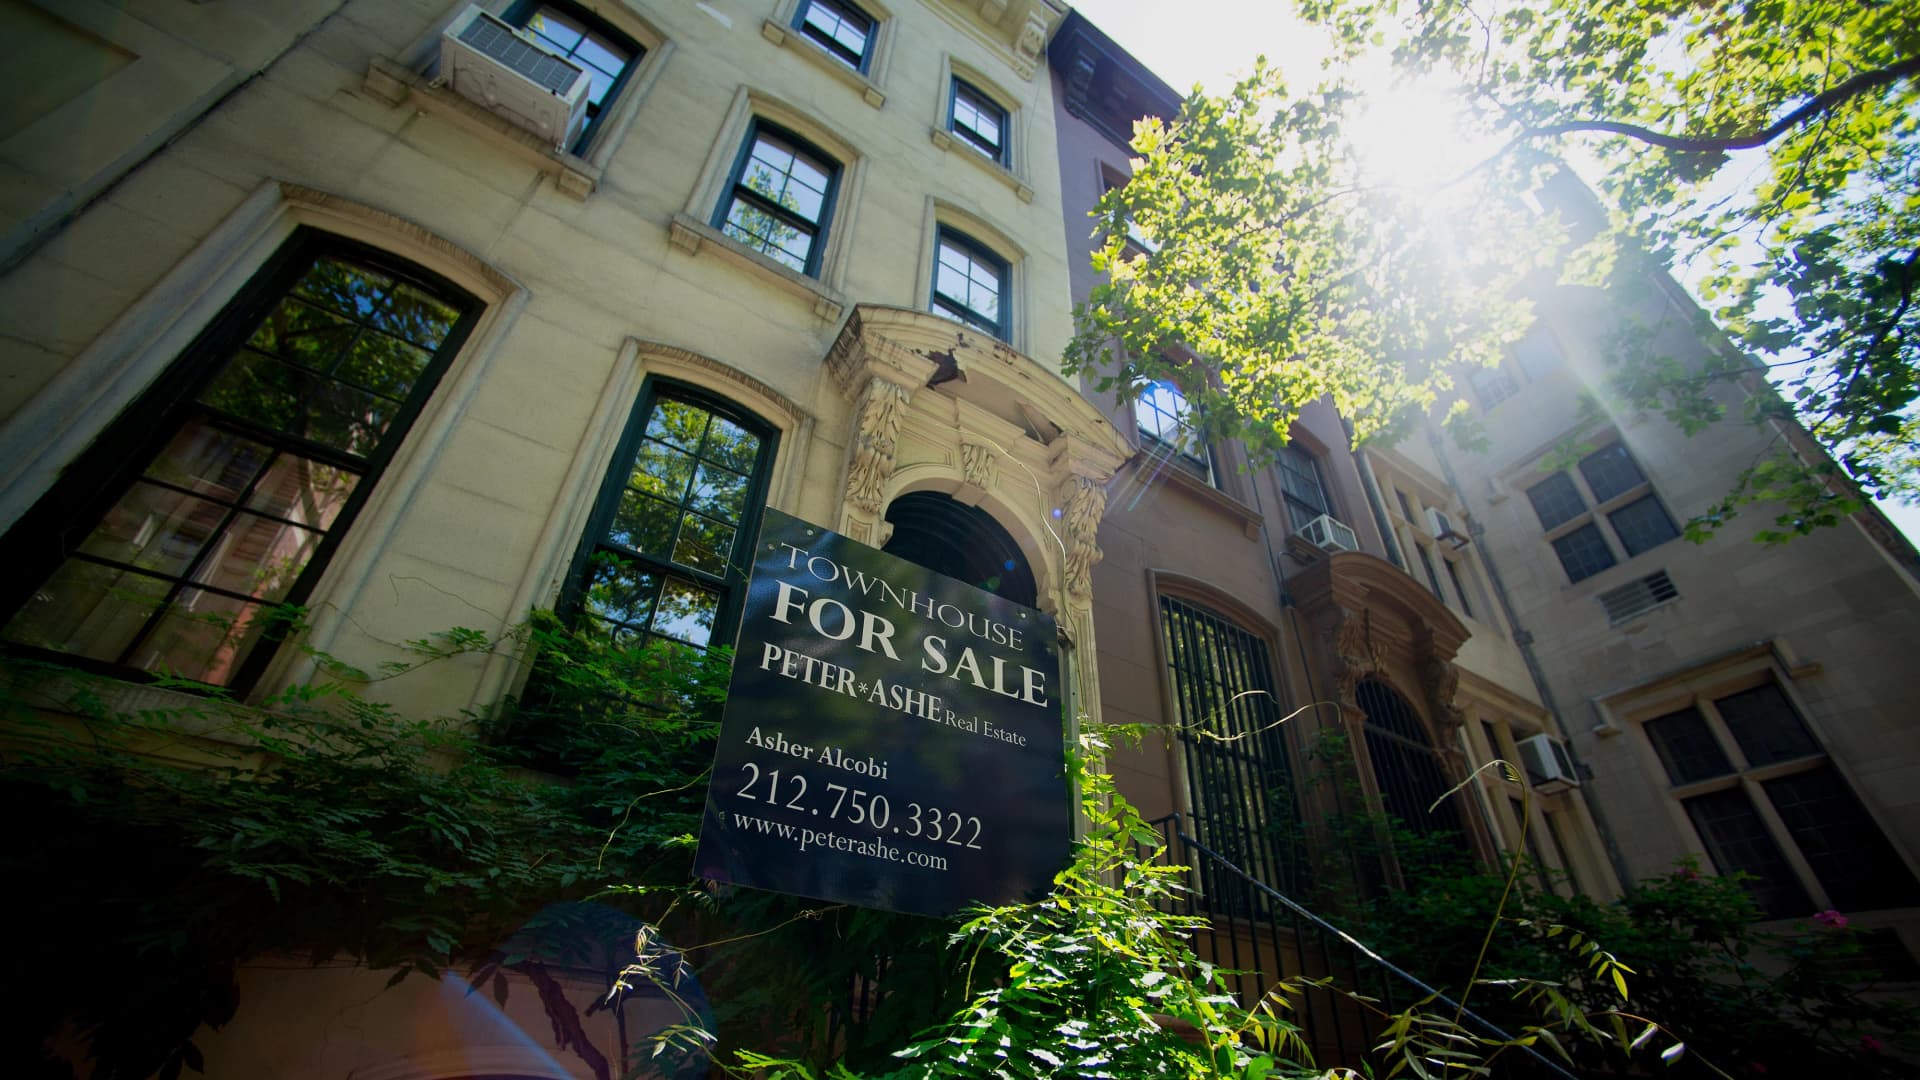 Manhattan apartment sales plunge in Q4, brokers fear frozen market